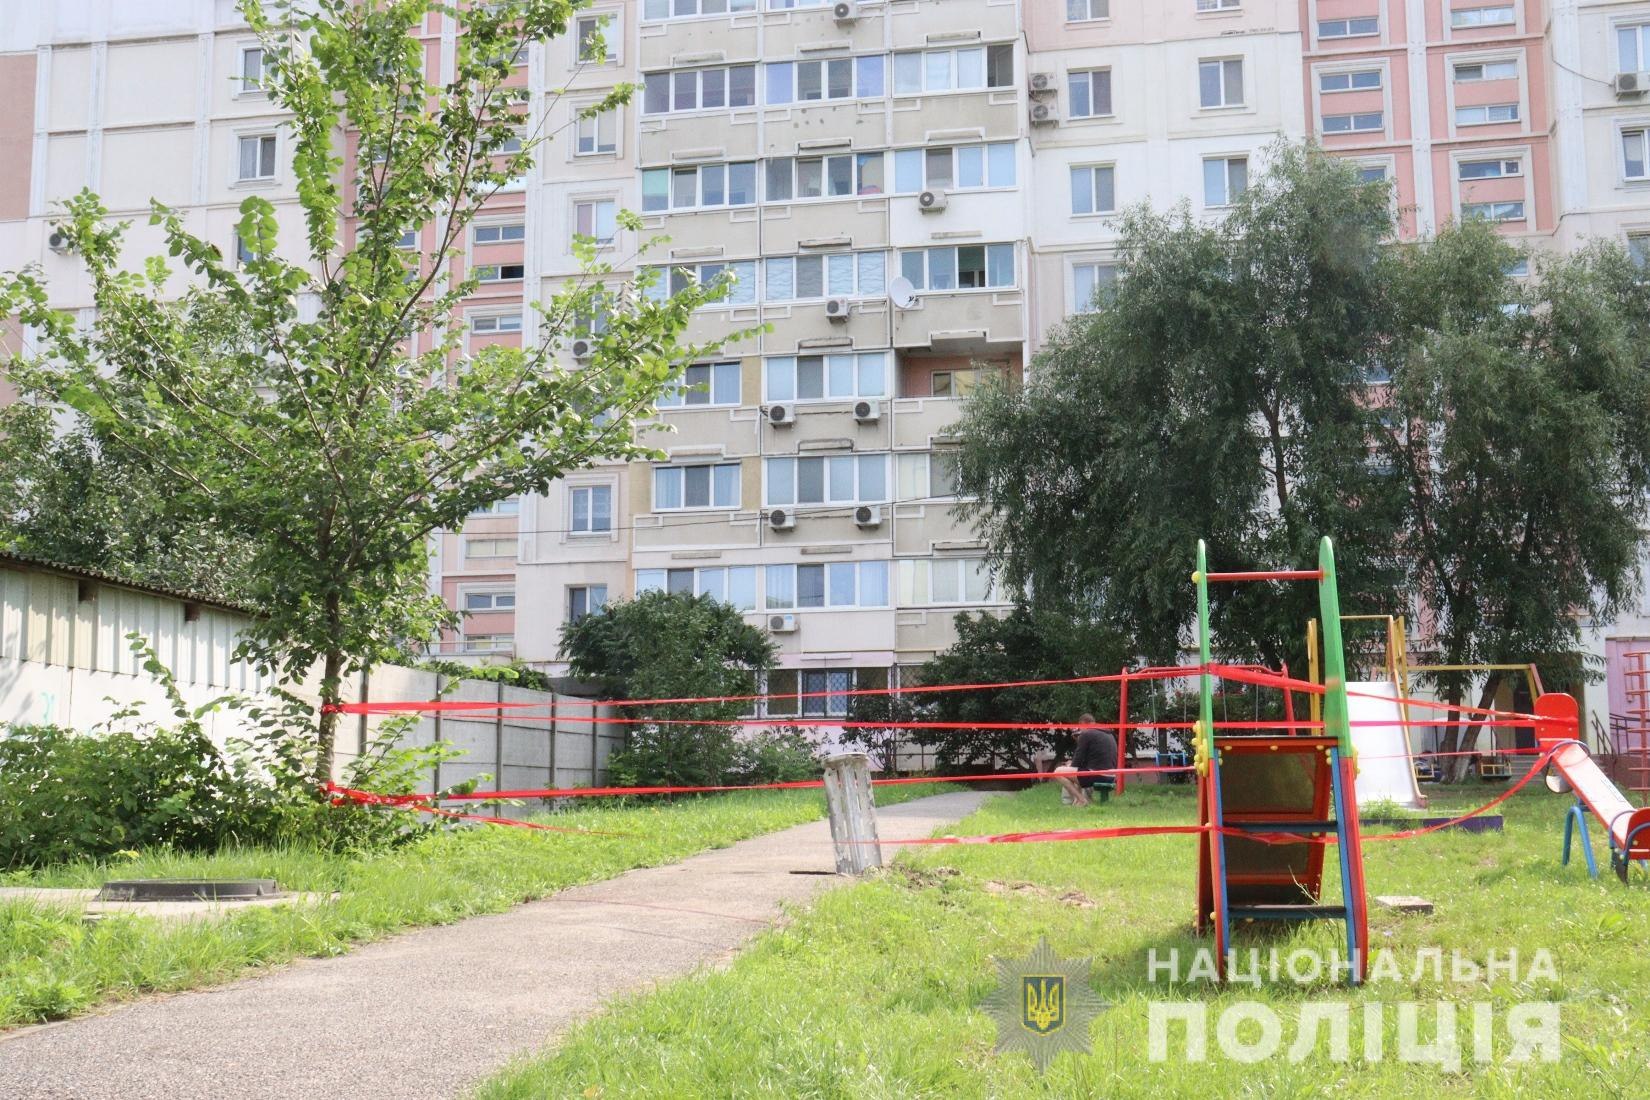 Обломки РСЗО «Смерч» обнаружены на детской площадке в Харькове (фото)